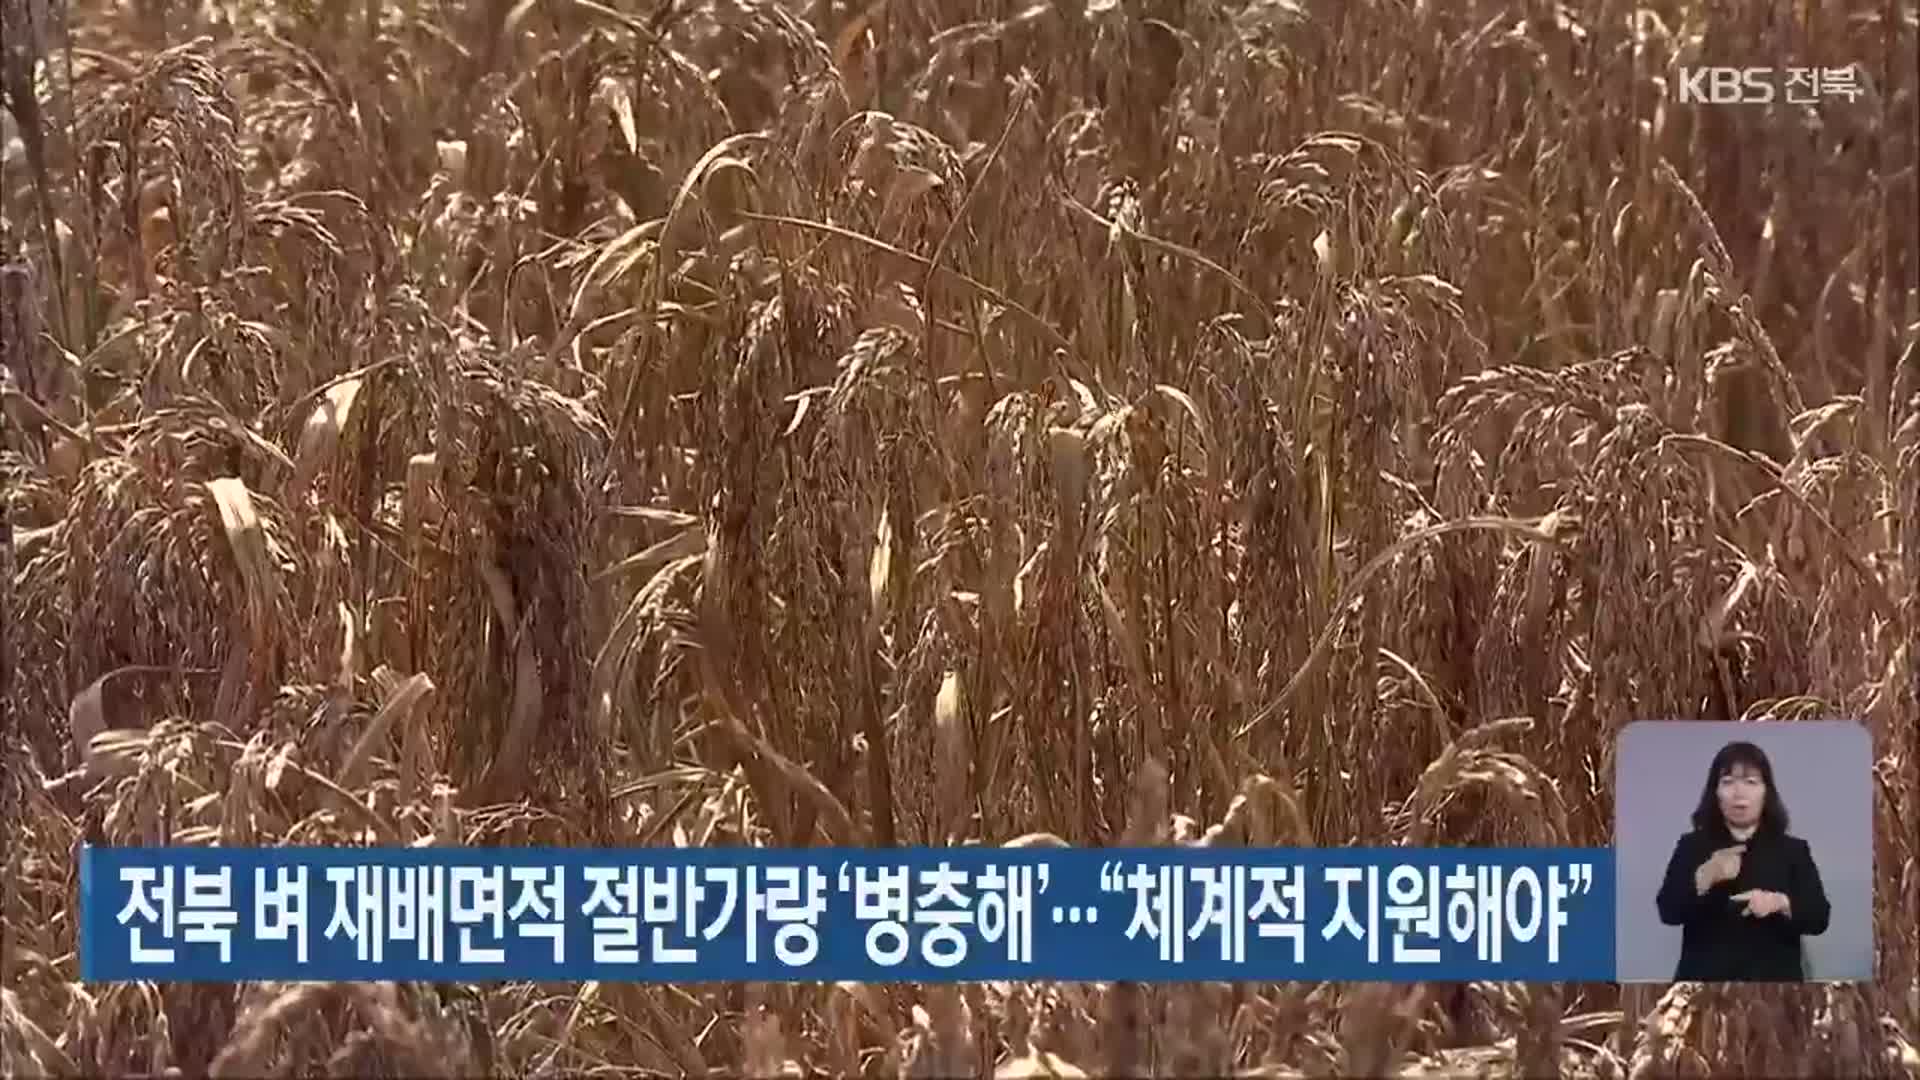 전북 벼 재배면적 절반가량 ‘병충해’…“체계적 지원해야”